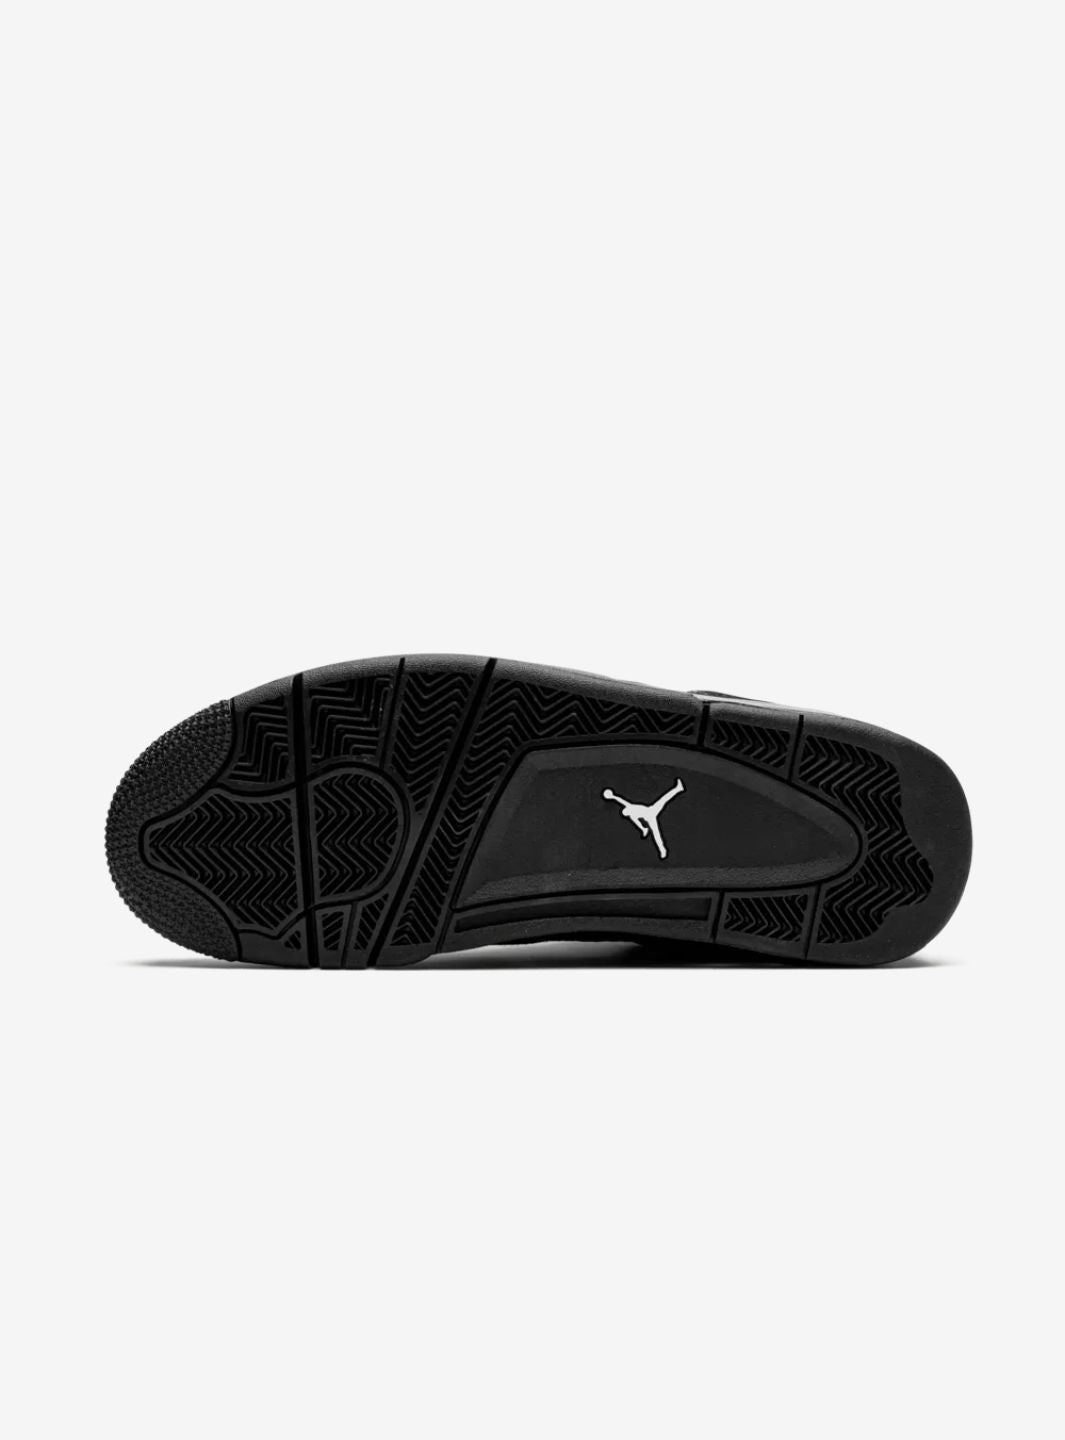 Air Jordan 4 Black Cat (2020) - CU1110-010 | ResellZone